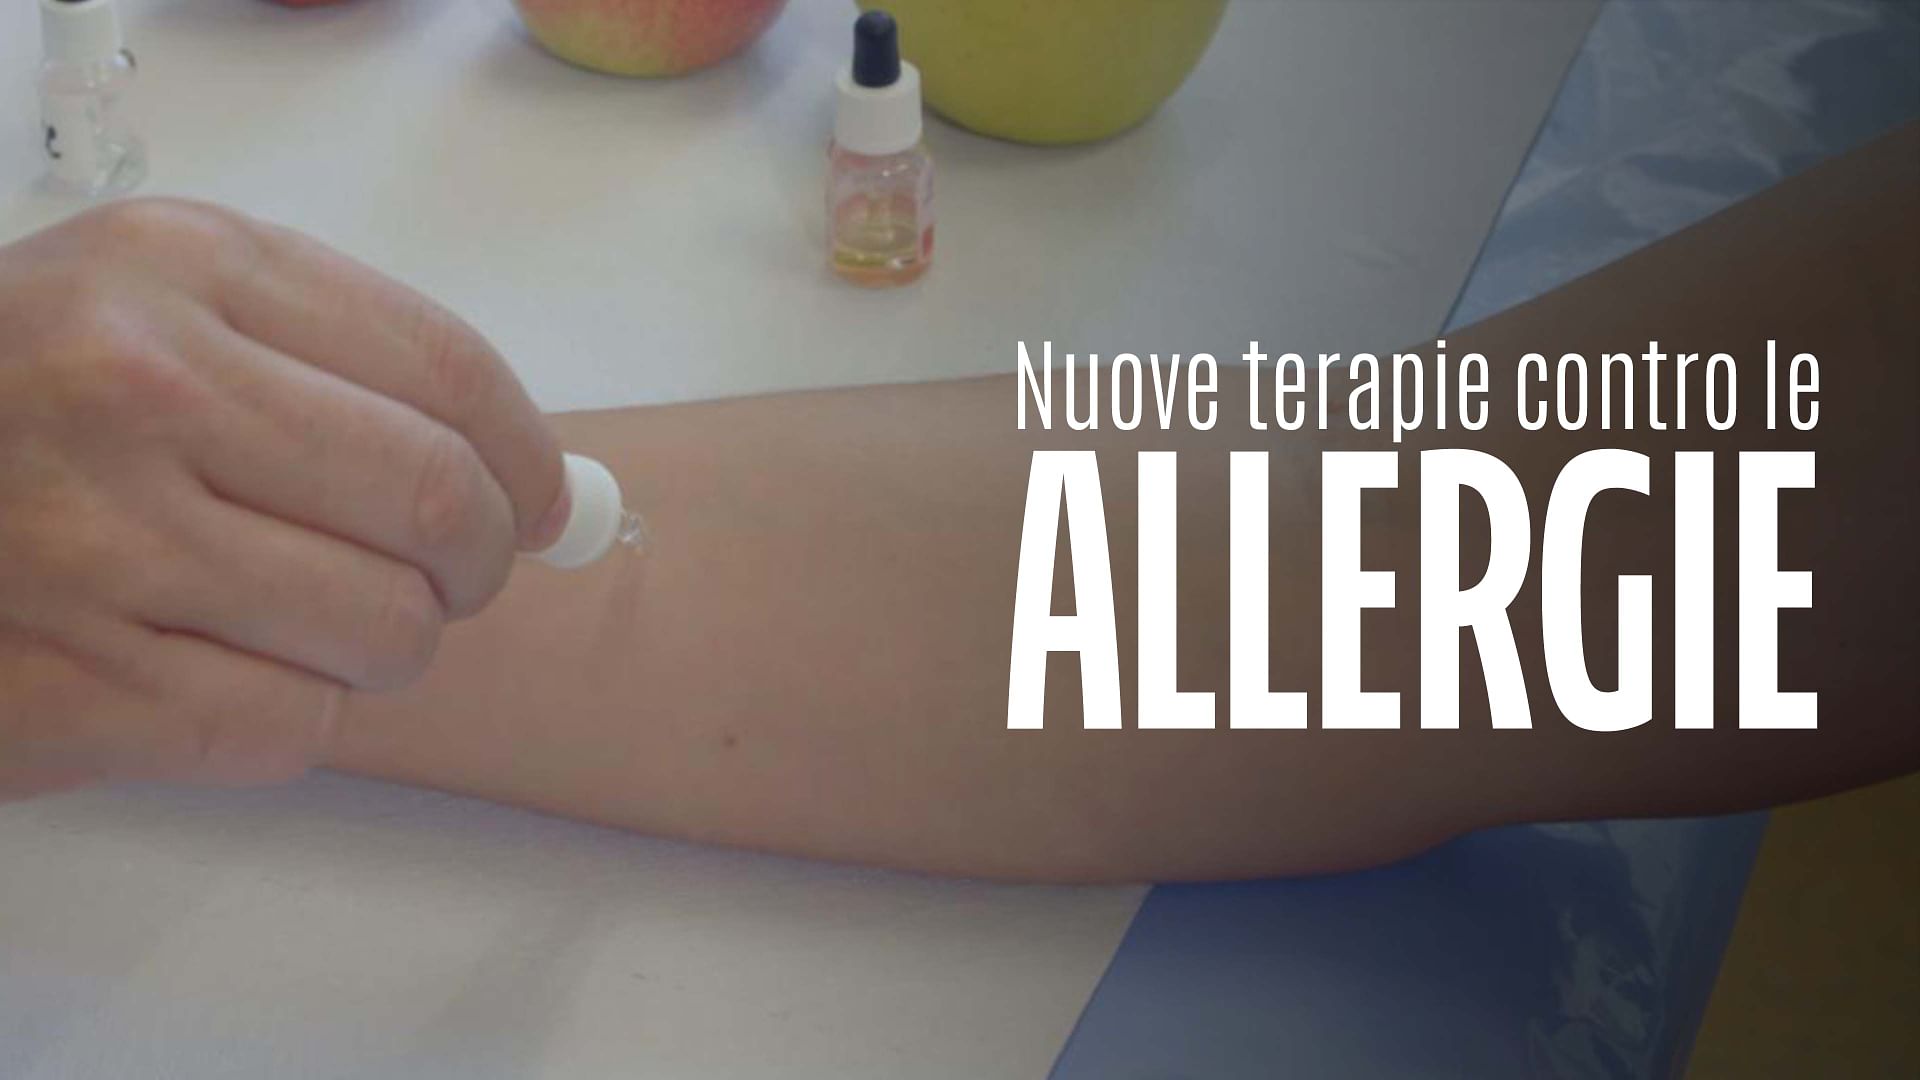 Re: sguardi sulla società - Nuove terapie contro l'allergia